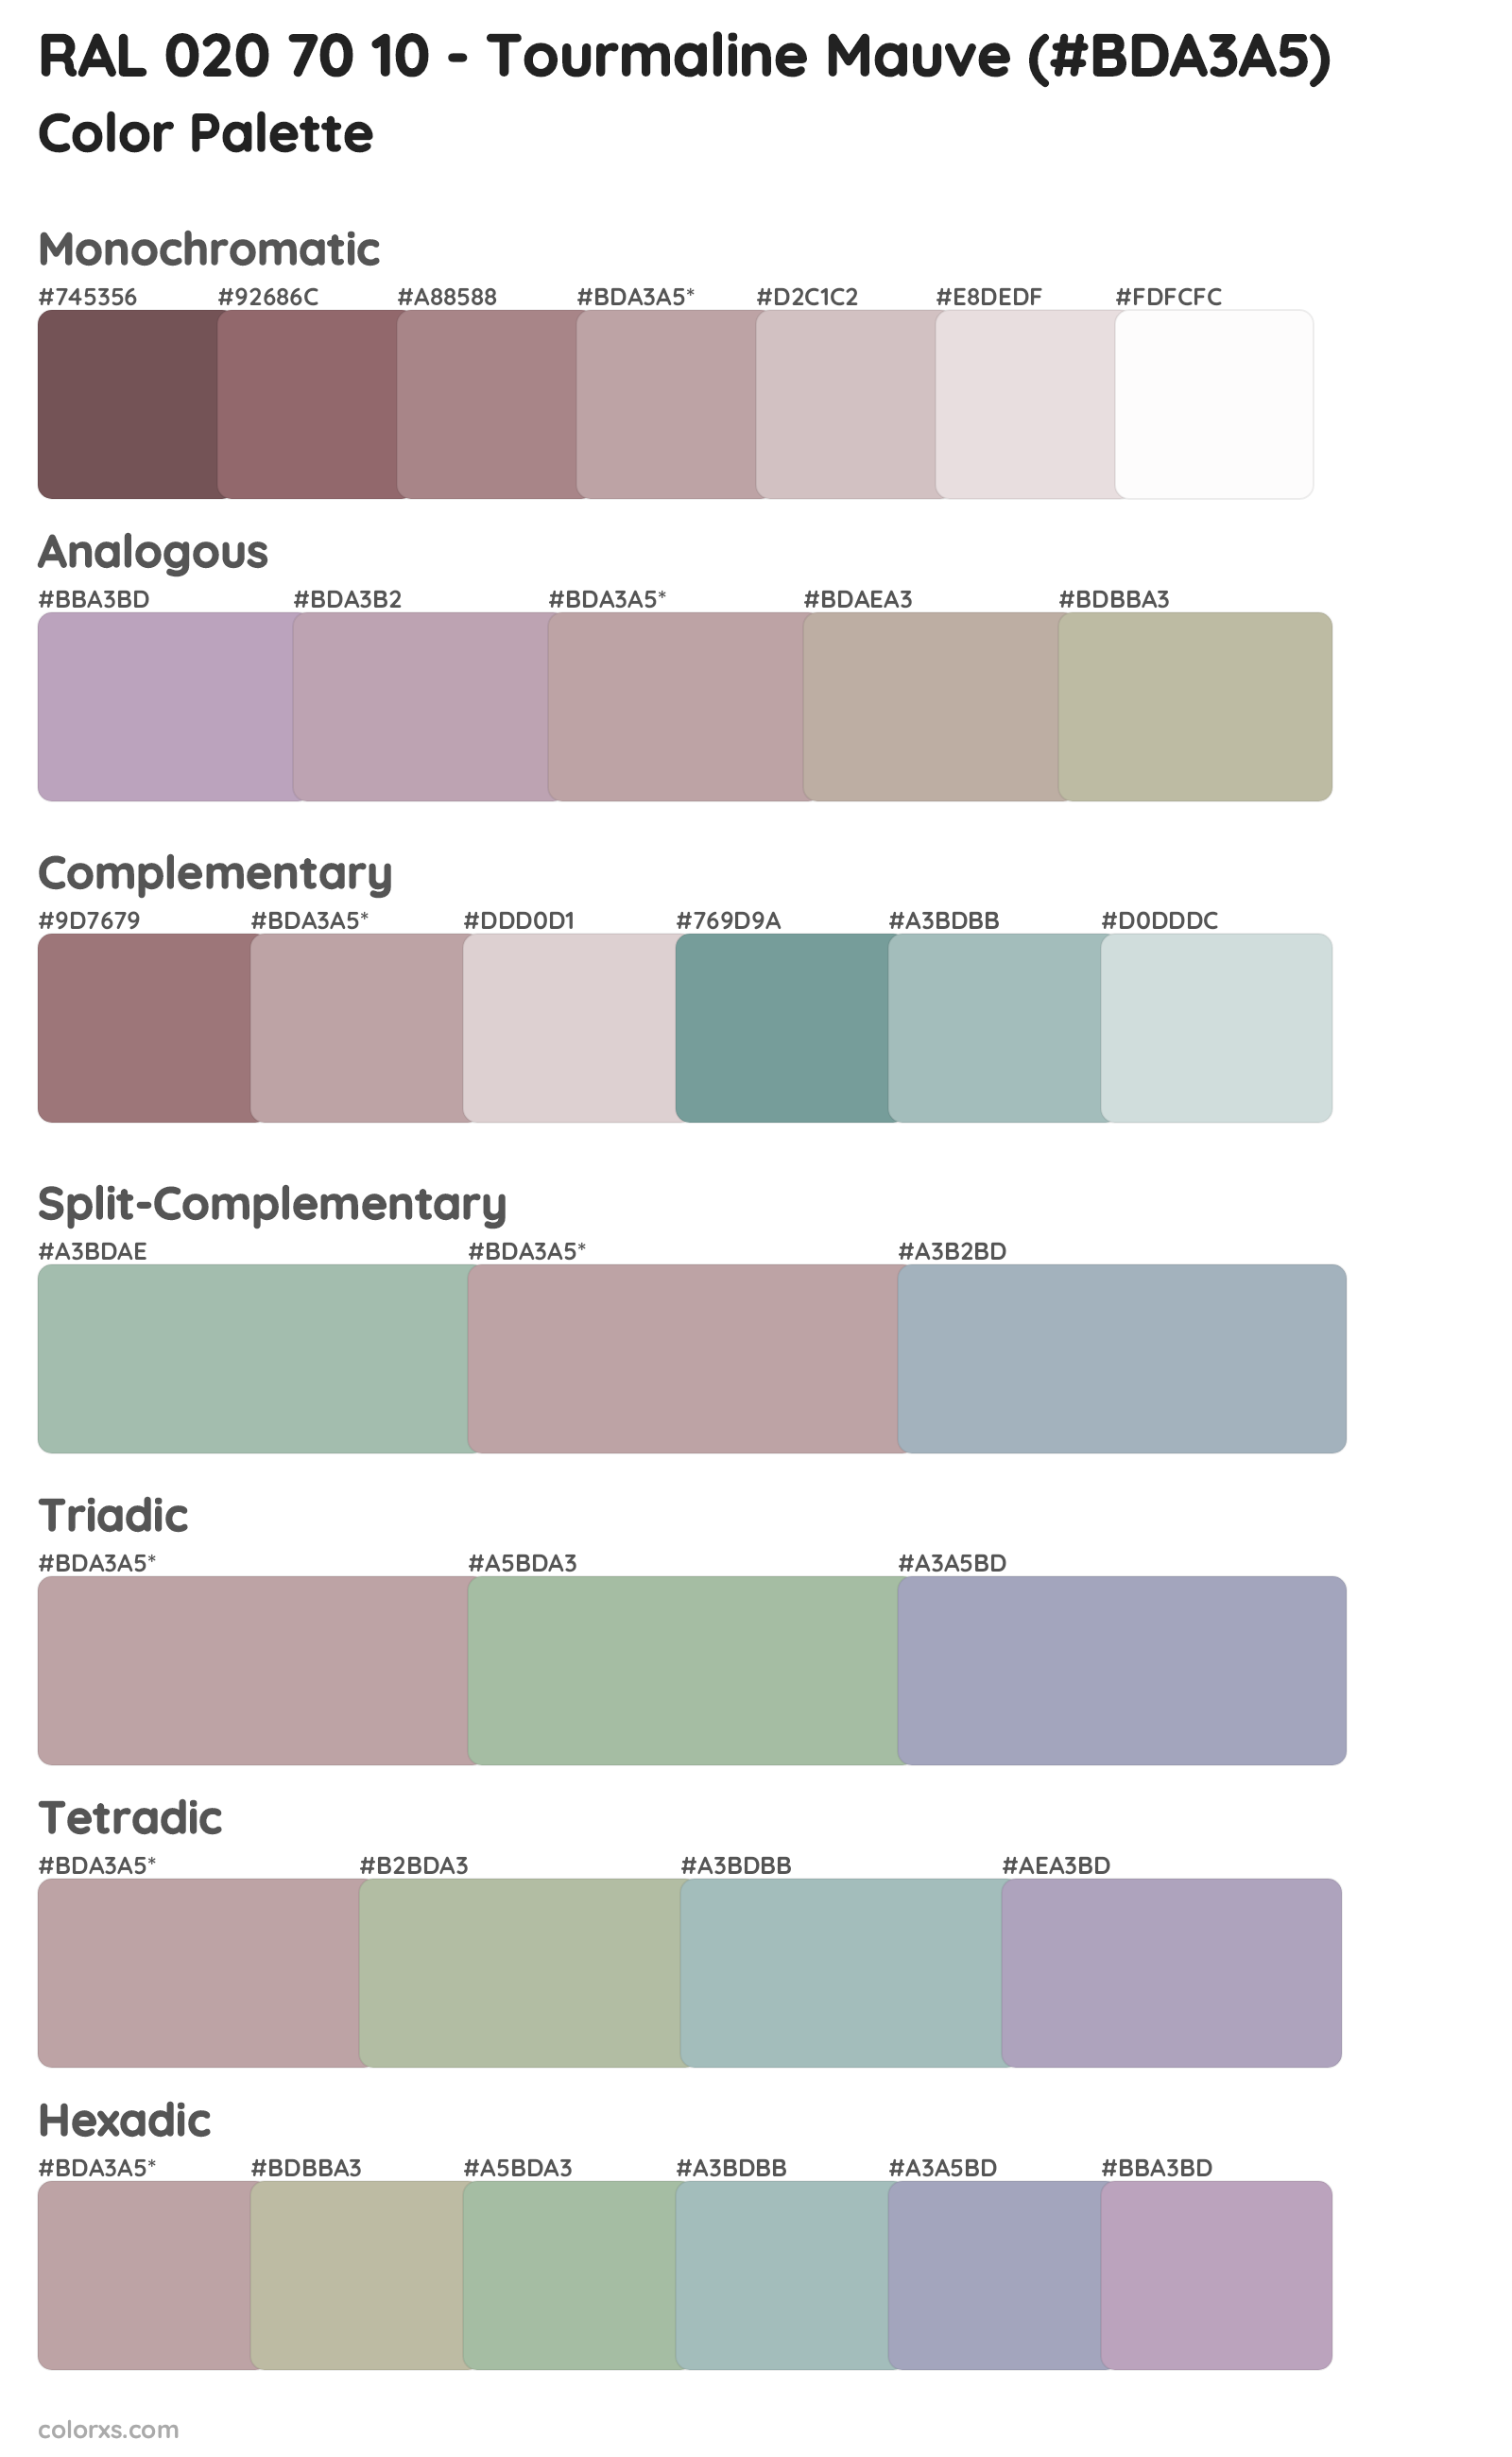 RAL 020 70 10 - Tourmaline Mauve Color Scheme Palettes